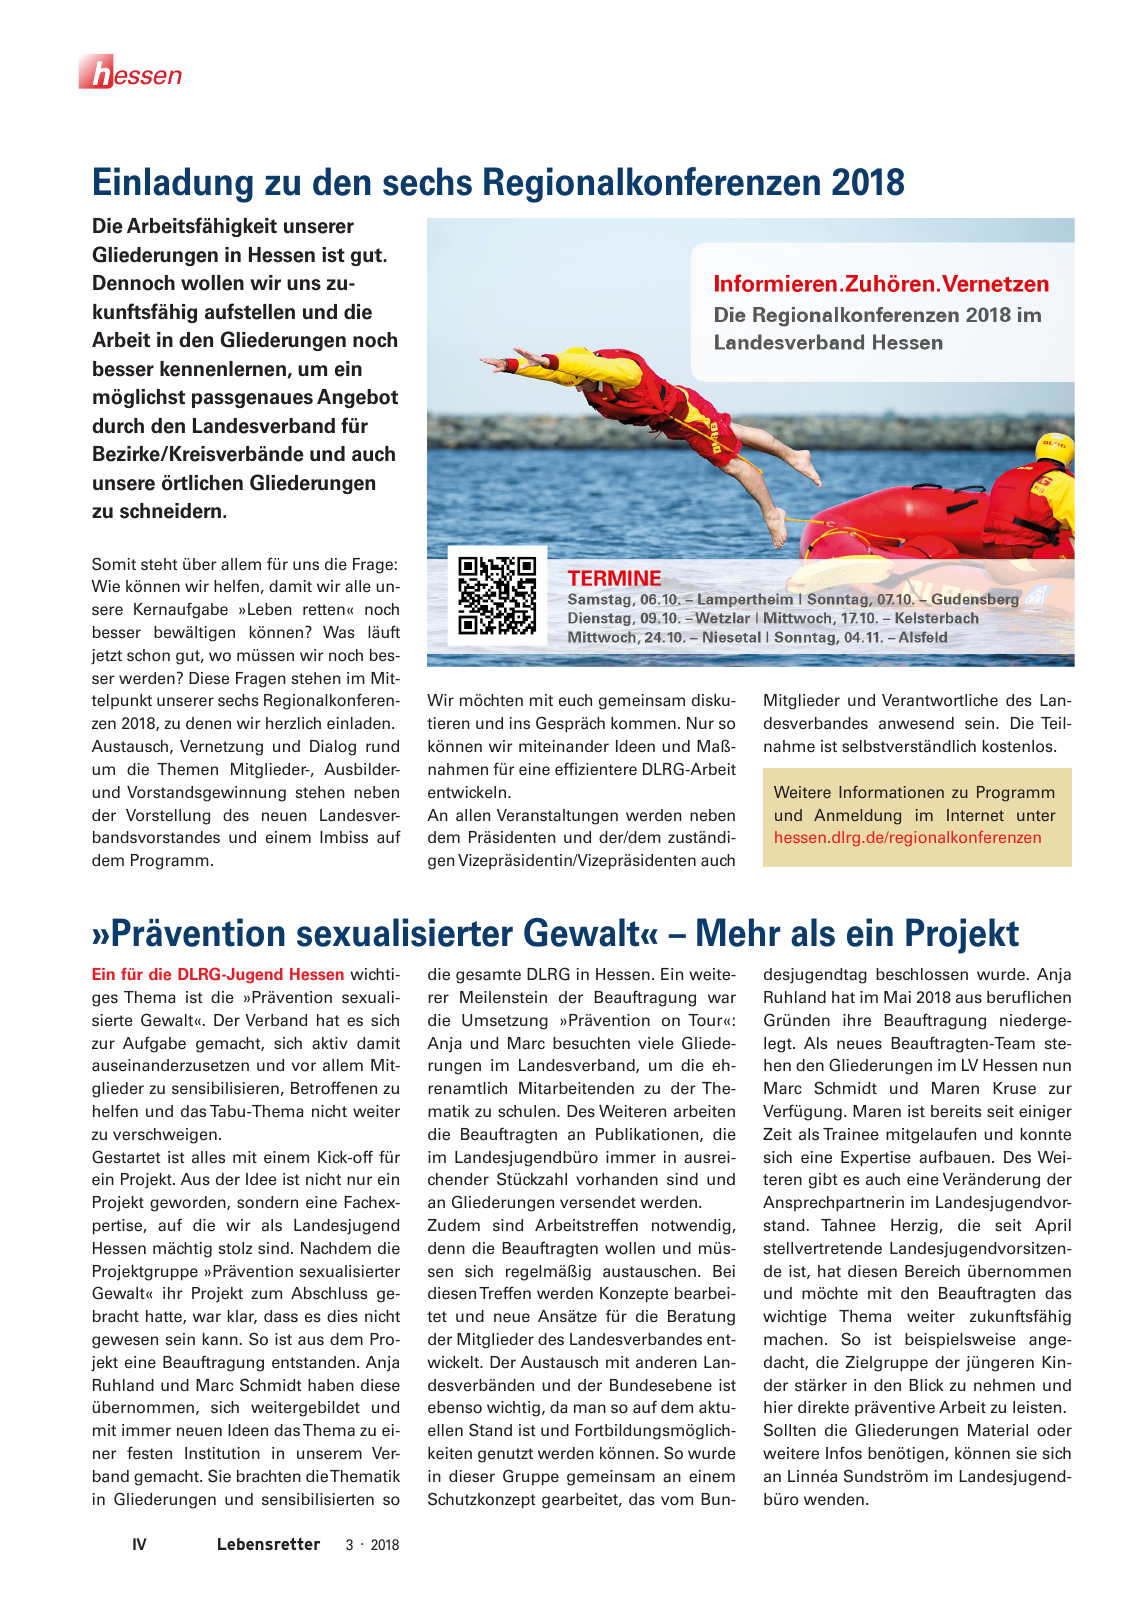 Vorschau Lebensretter 3/2018 - Regionalausgabe Hessen Seite 6